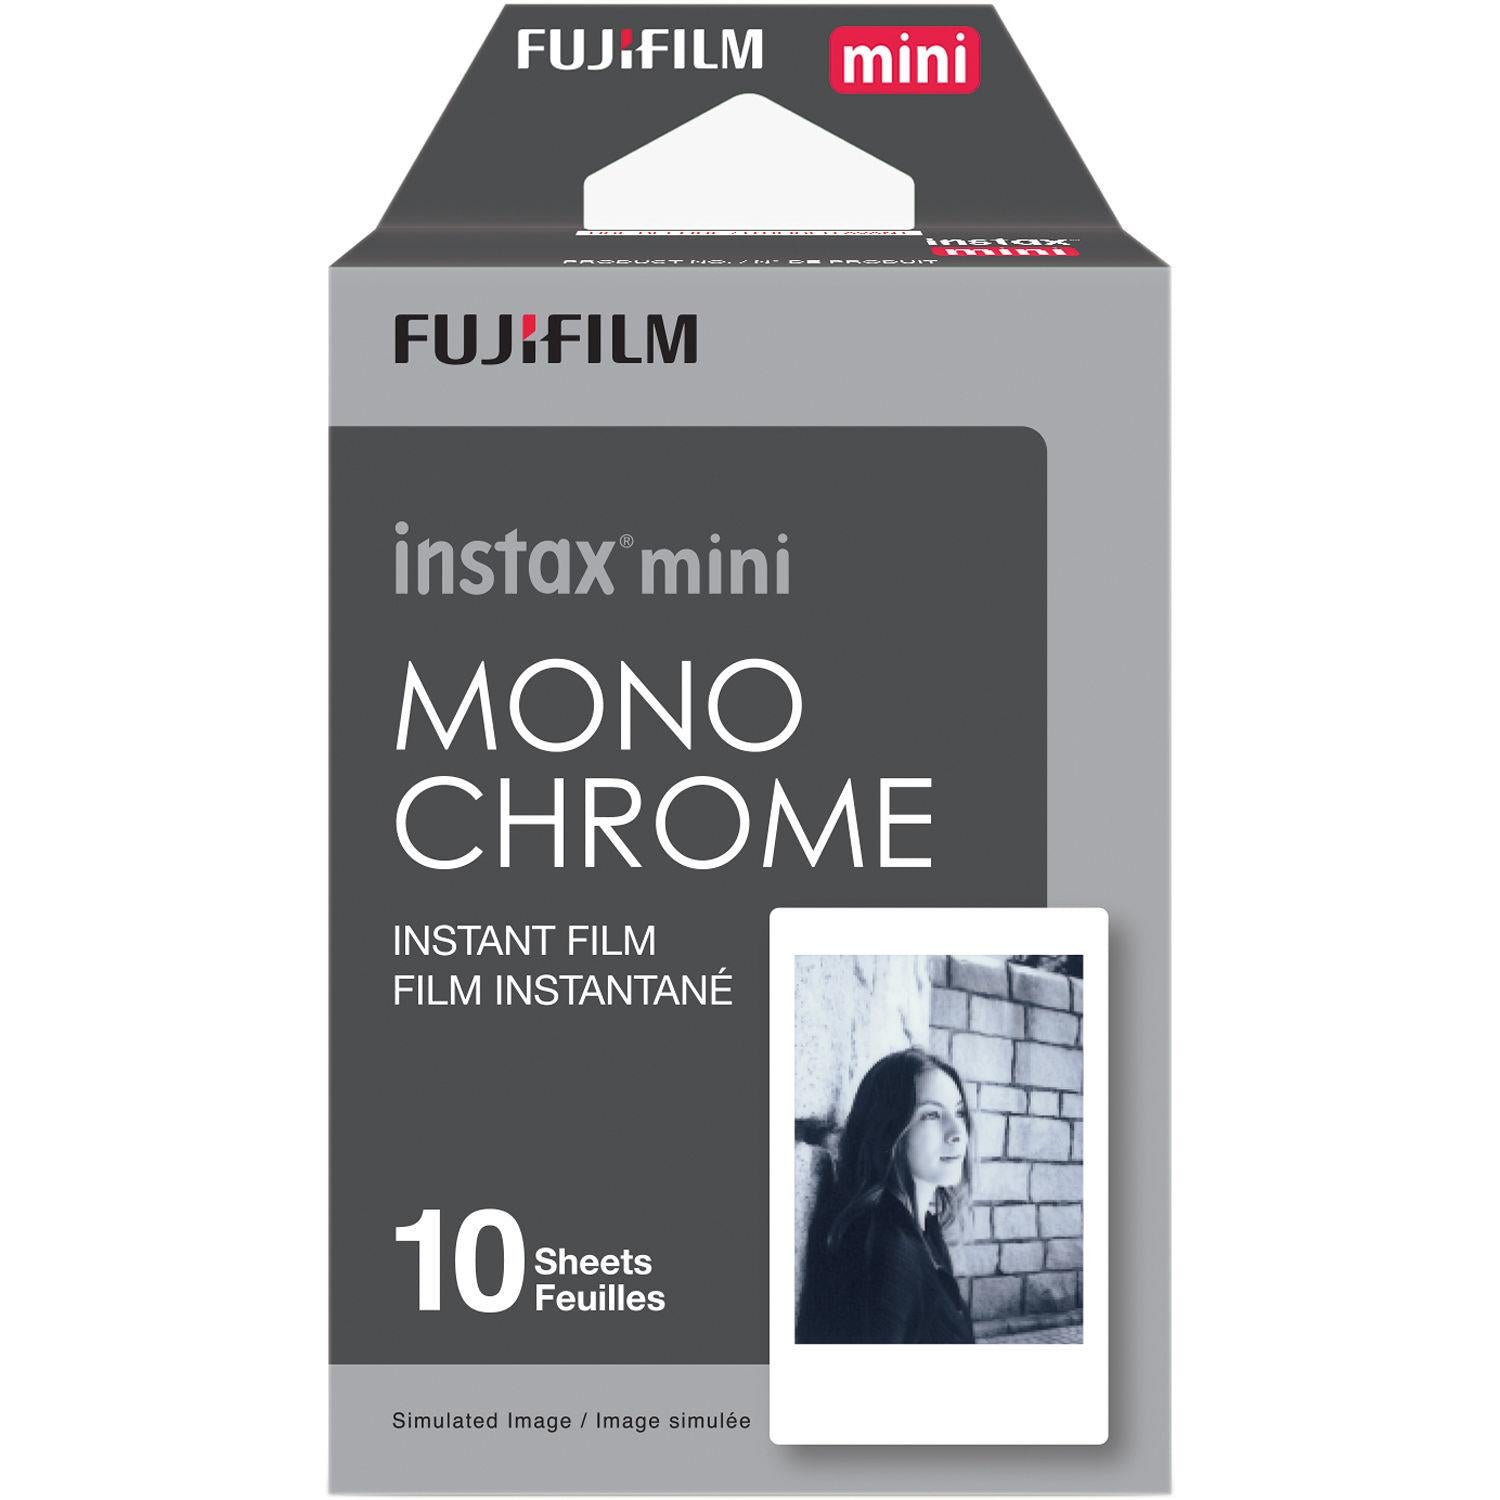 Instax mini 8 film -  France